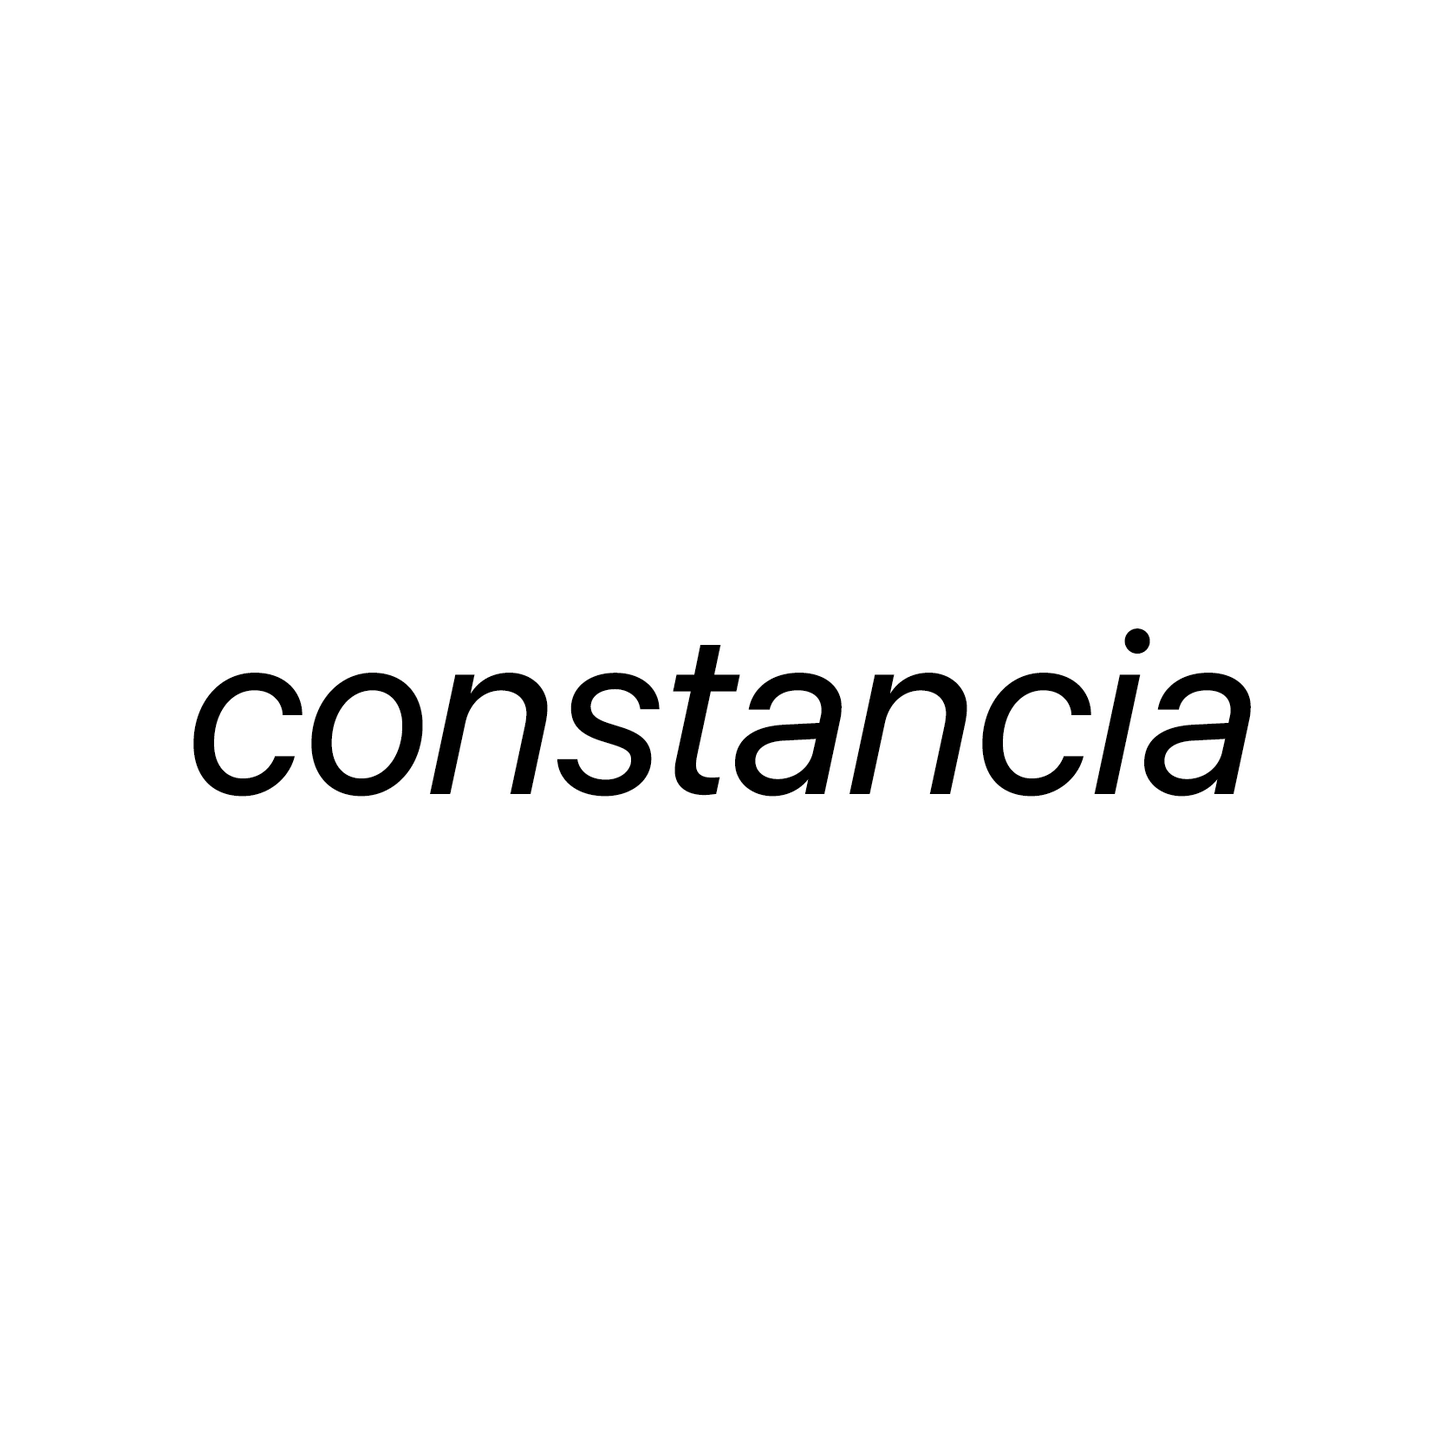 Constancia